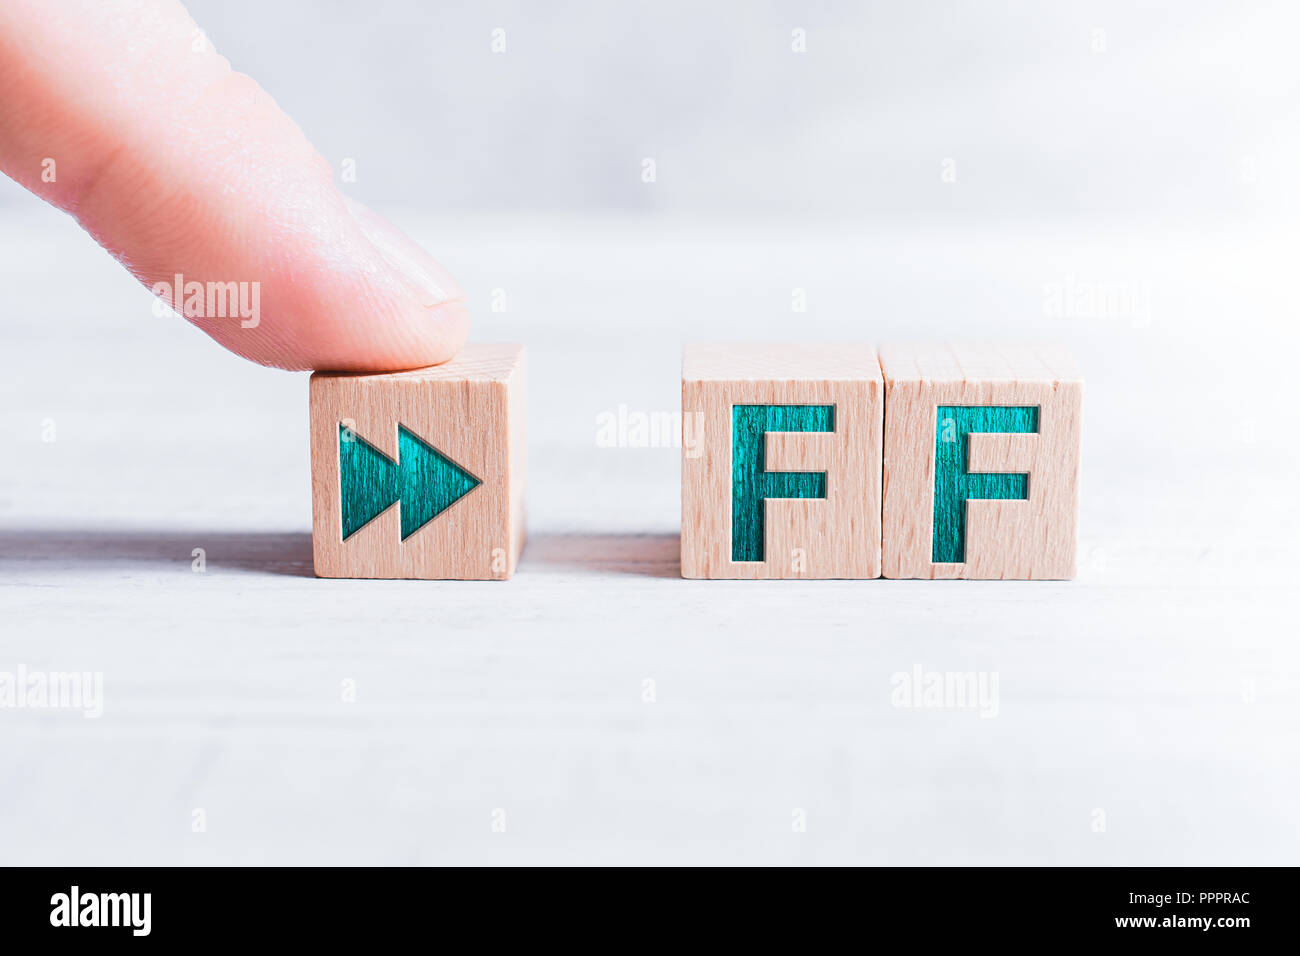 L'abréviation FF formé par des blocs de bois et il est composé par un doigt masculin sur un tableau blanc Banque D'Images